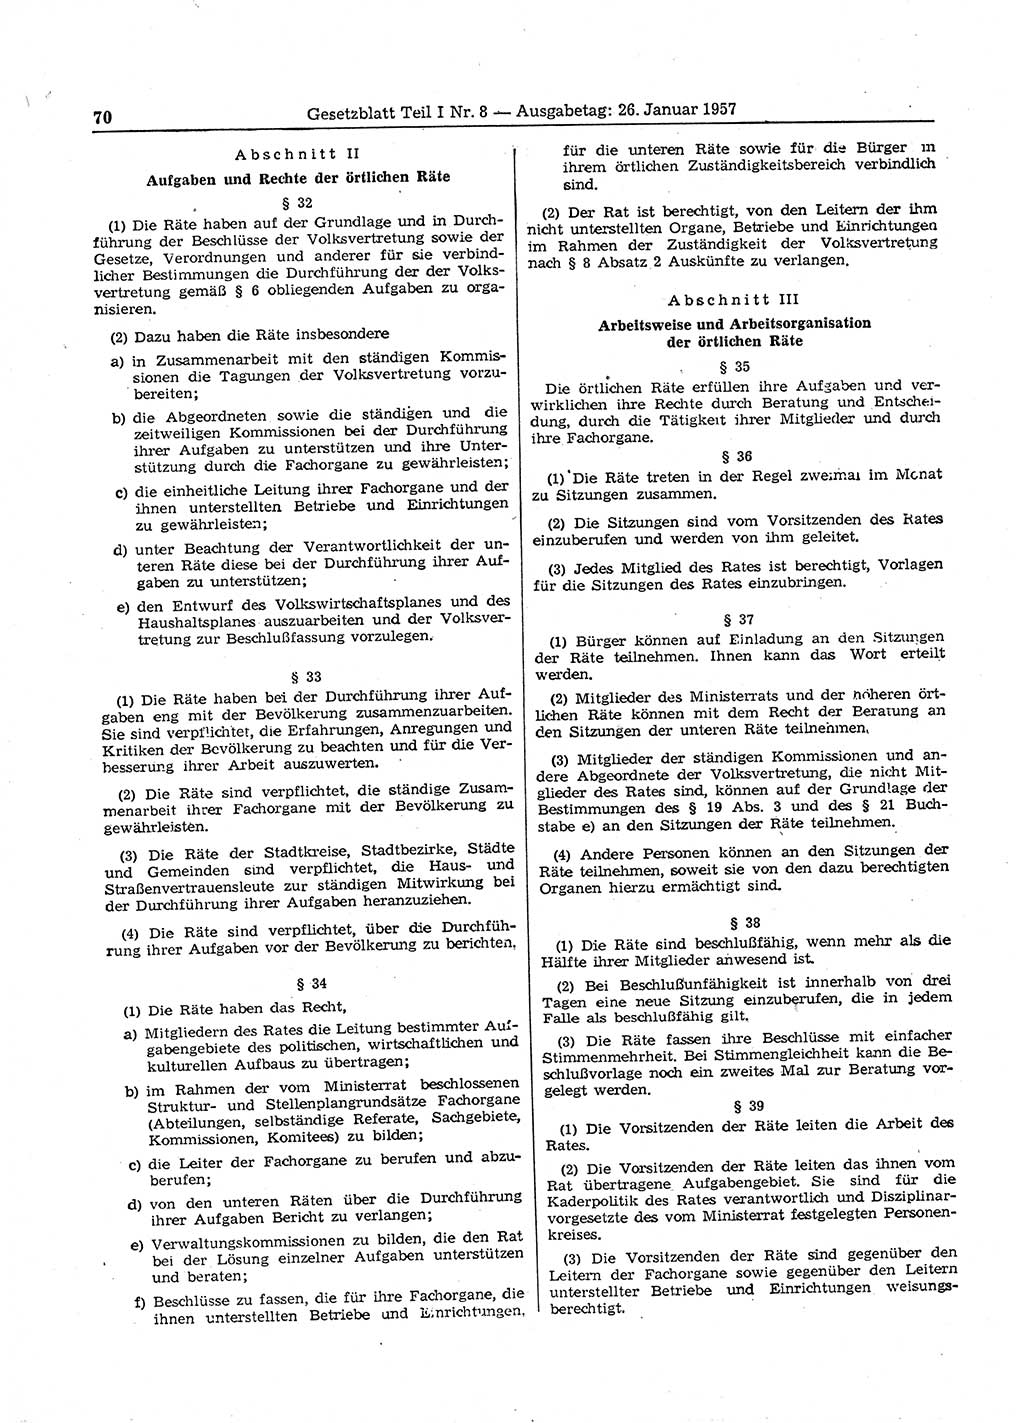 Gesetzblatt (GBl.) der Deutschen Demokratischen Republik (DDR) Teil Ⅰ 1957, Seite 70 (GBl. DDR Ⅰ 1957, S. 70)